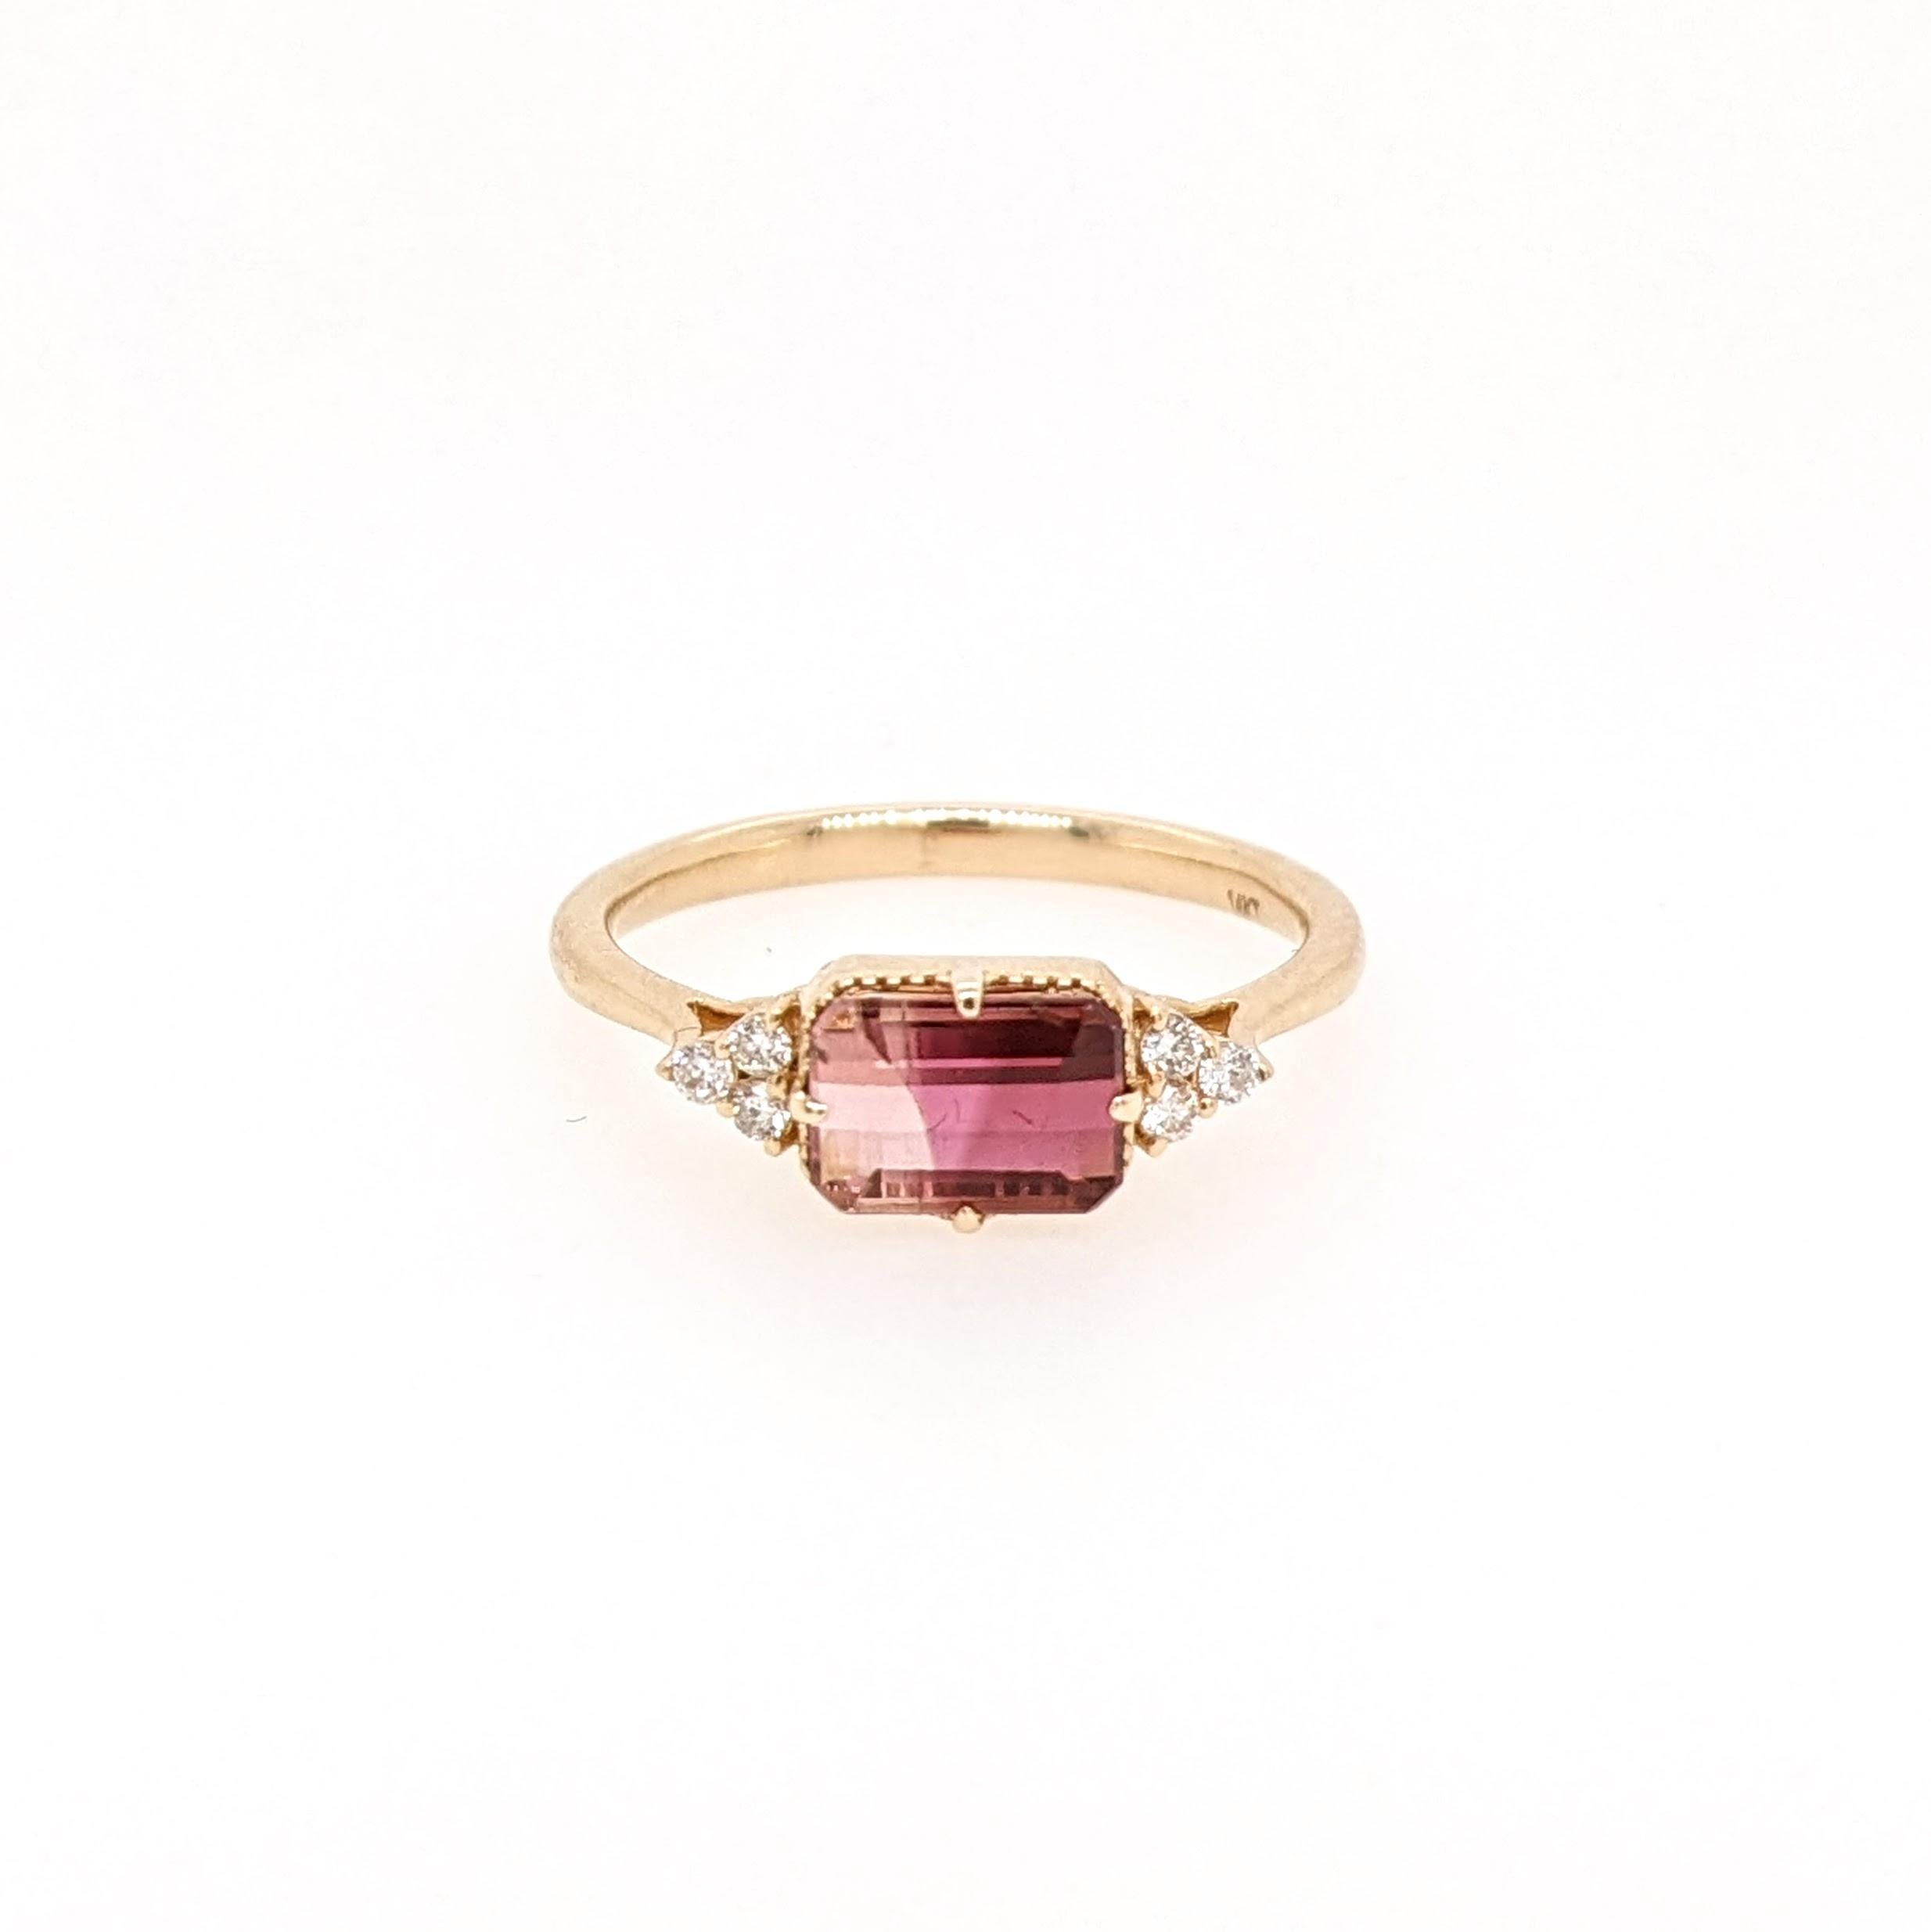 Dieser Ring zeigt einen schönen zweifarbigen Turmalin in einer klassischen NNJ Designs Ringfassung mit funkelnden natürlichen Diamanten, die alle in 14k Gelbgold gefasst sind. Ein wunderschöner moderner Look, der eine perfekte Balance zwischen